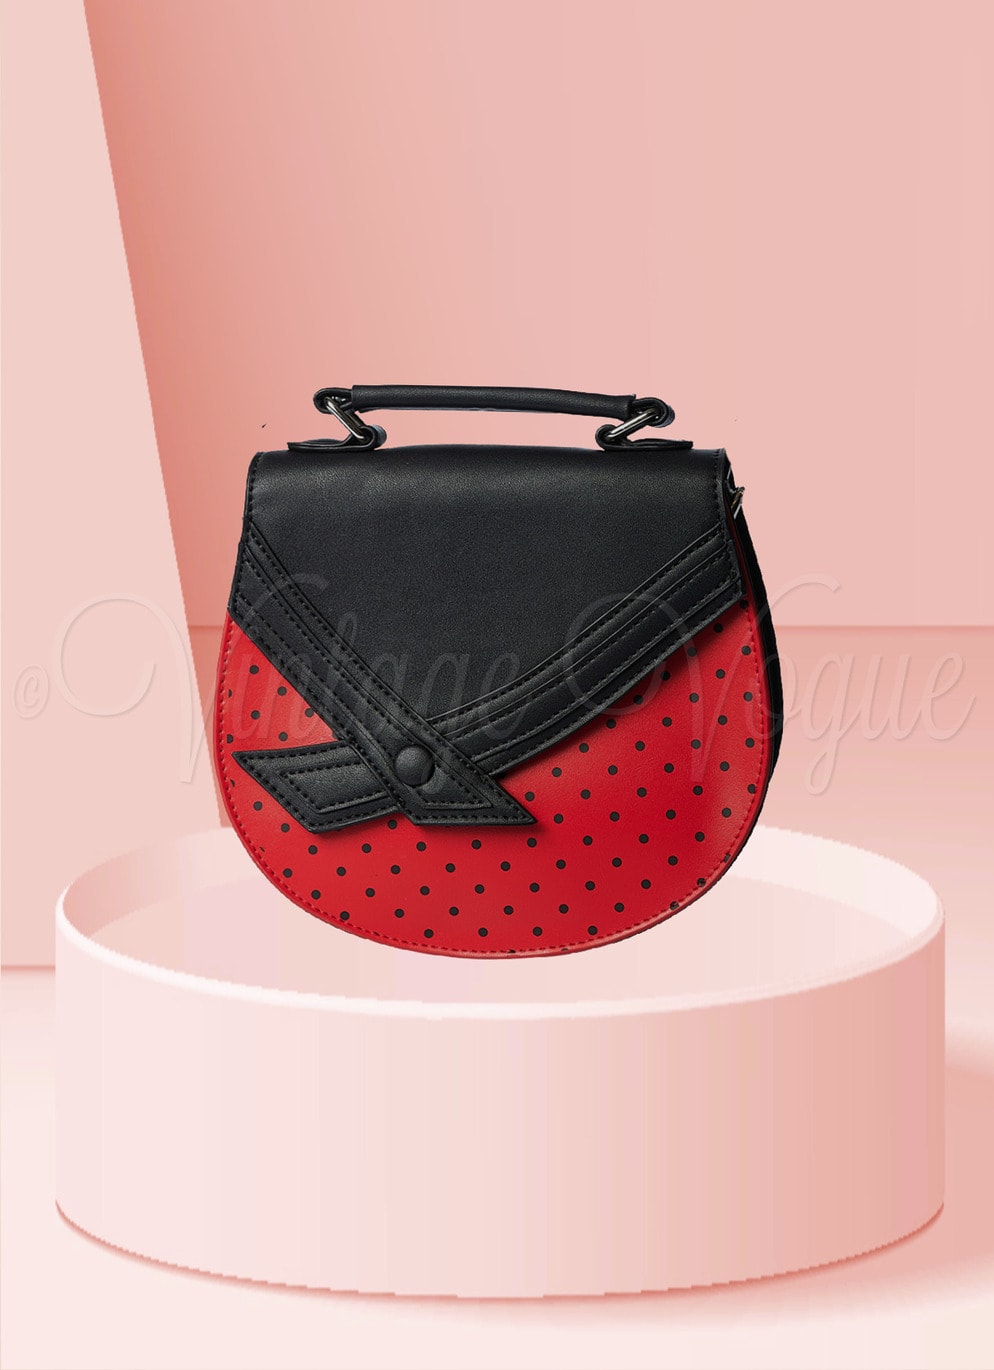 Banned Retro Polka Dots Punkte Handtasche “Sunshine Bag in Schwarz Rot